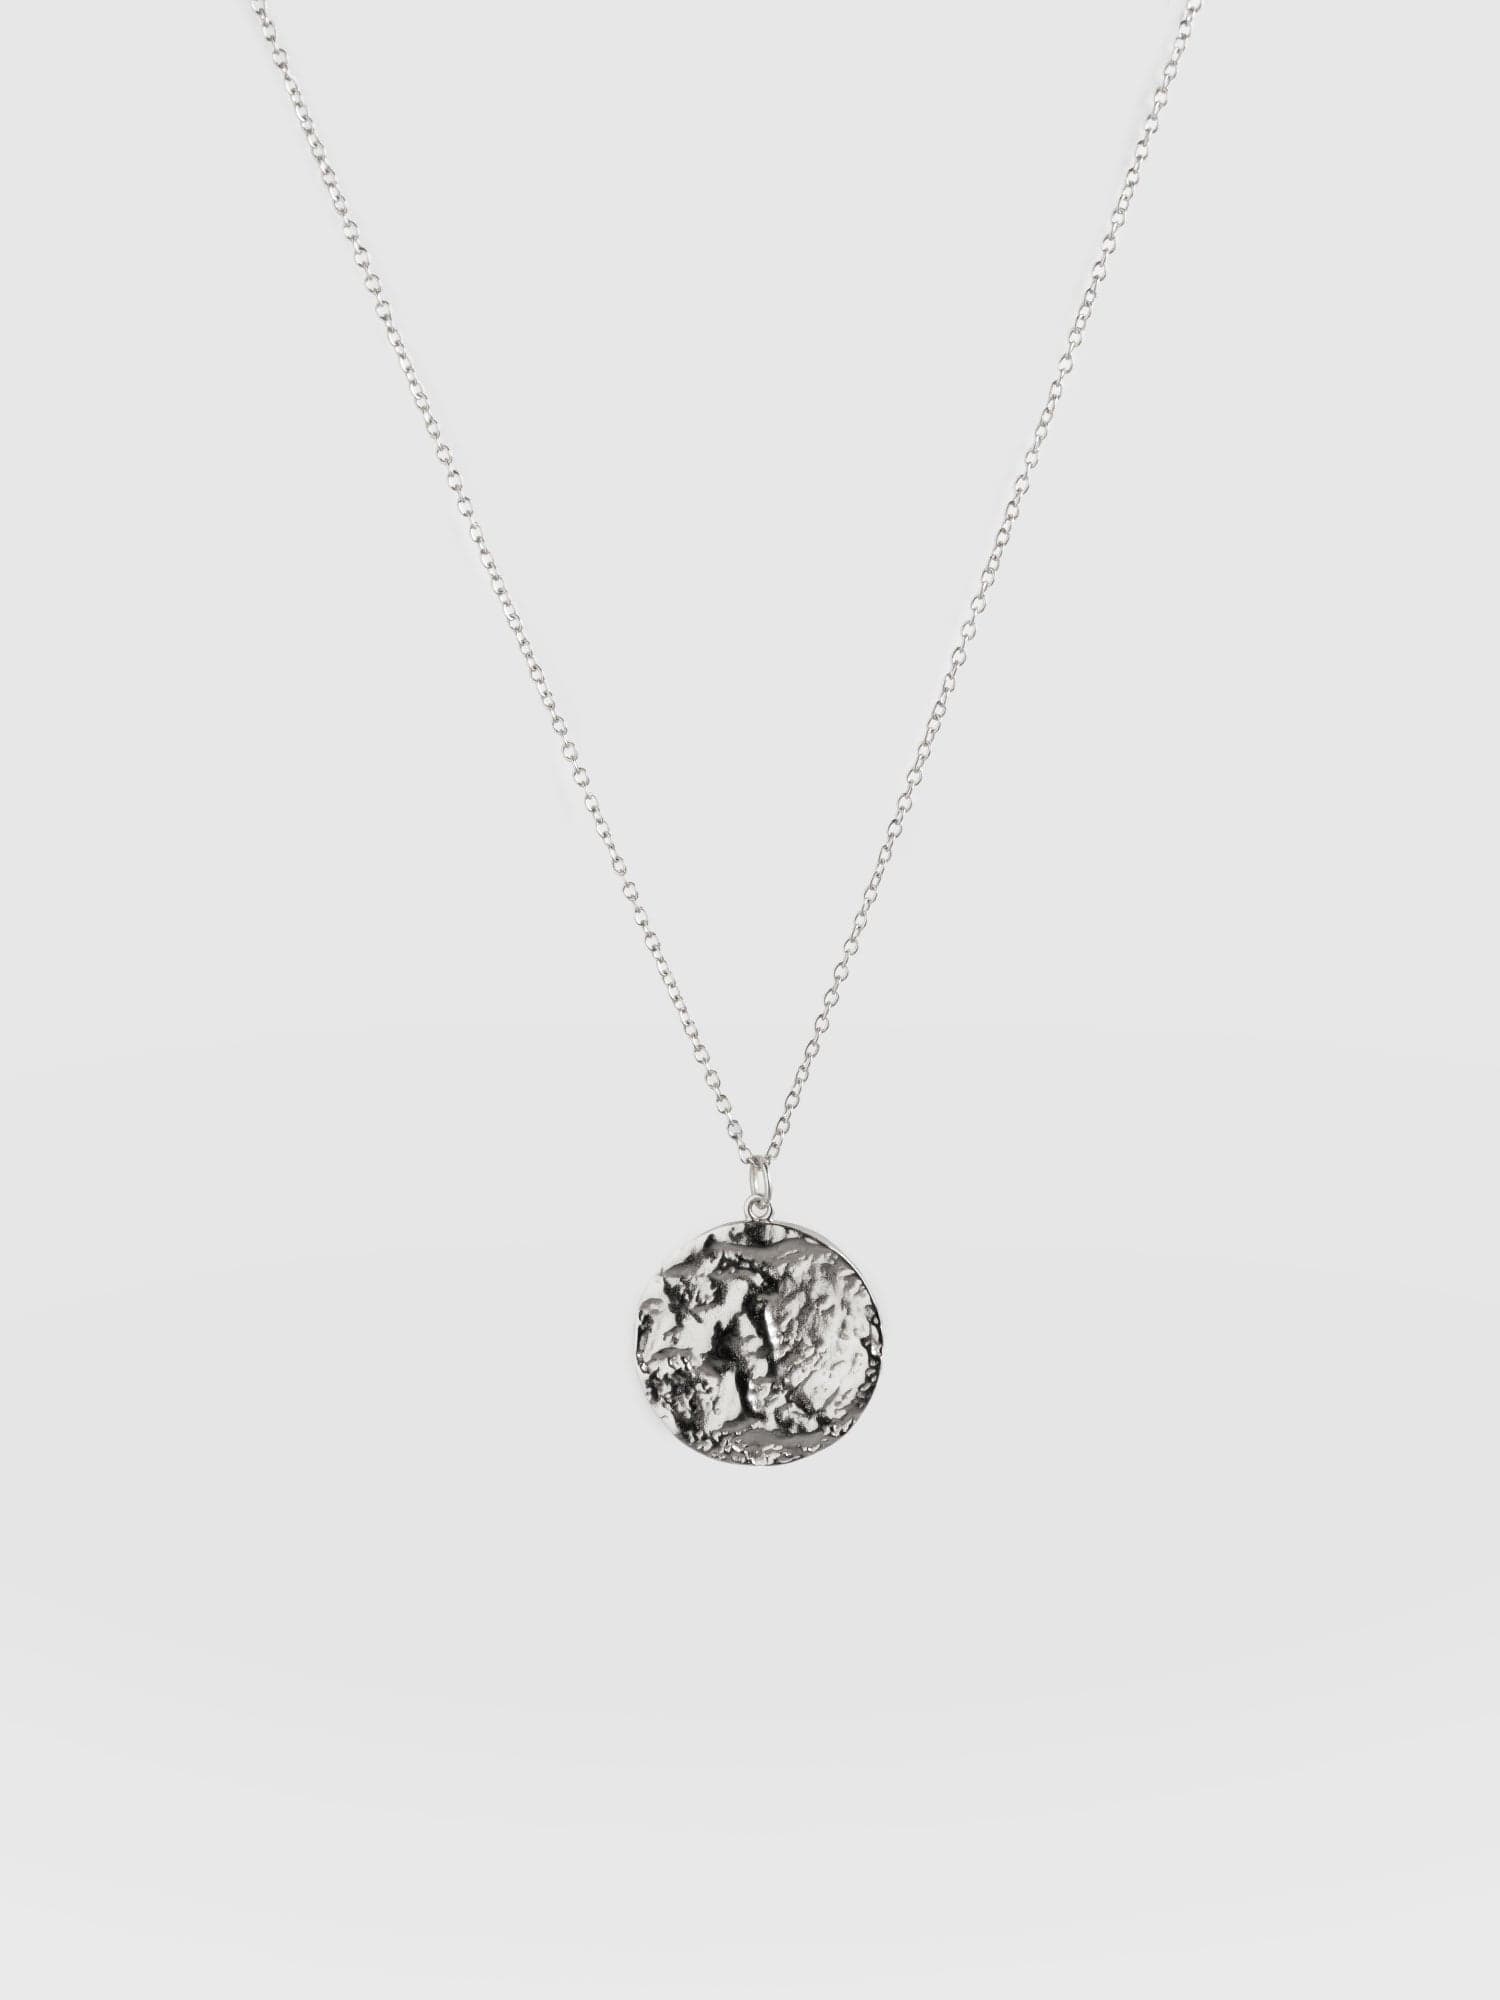 Buy the Five Star Silver Necklace from British Jewellery Designer Daniella  Draper – Daniella Draper UK